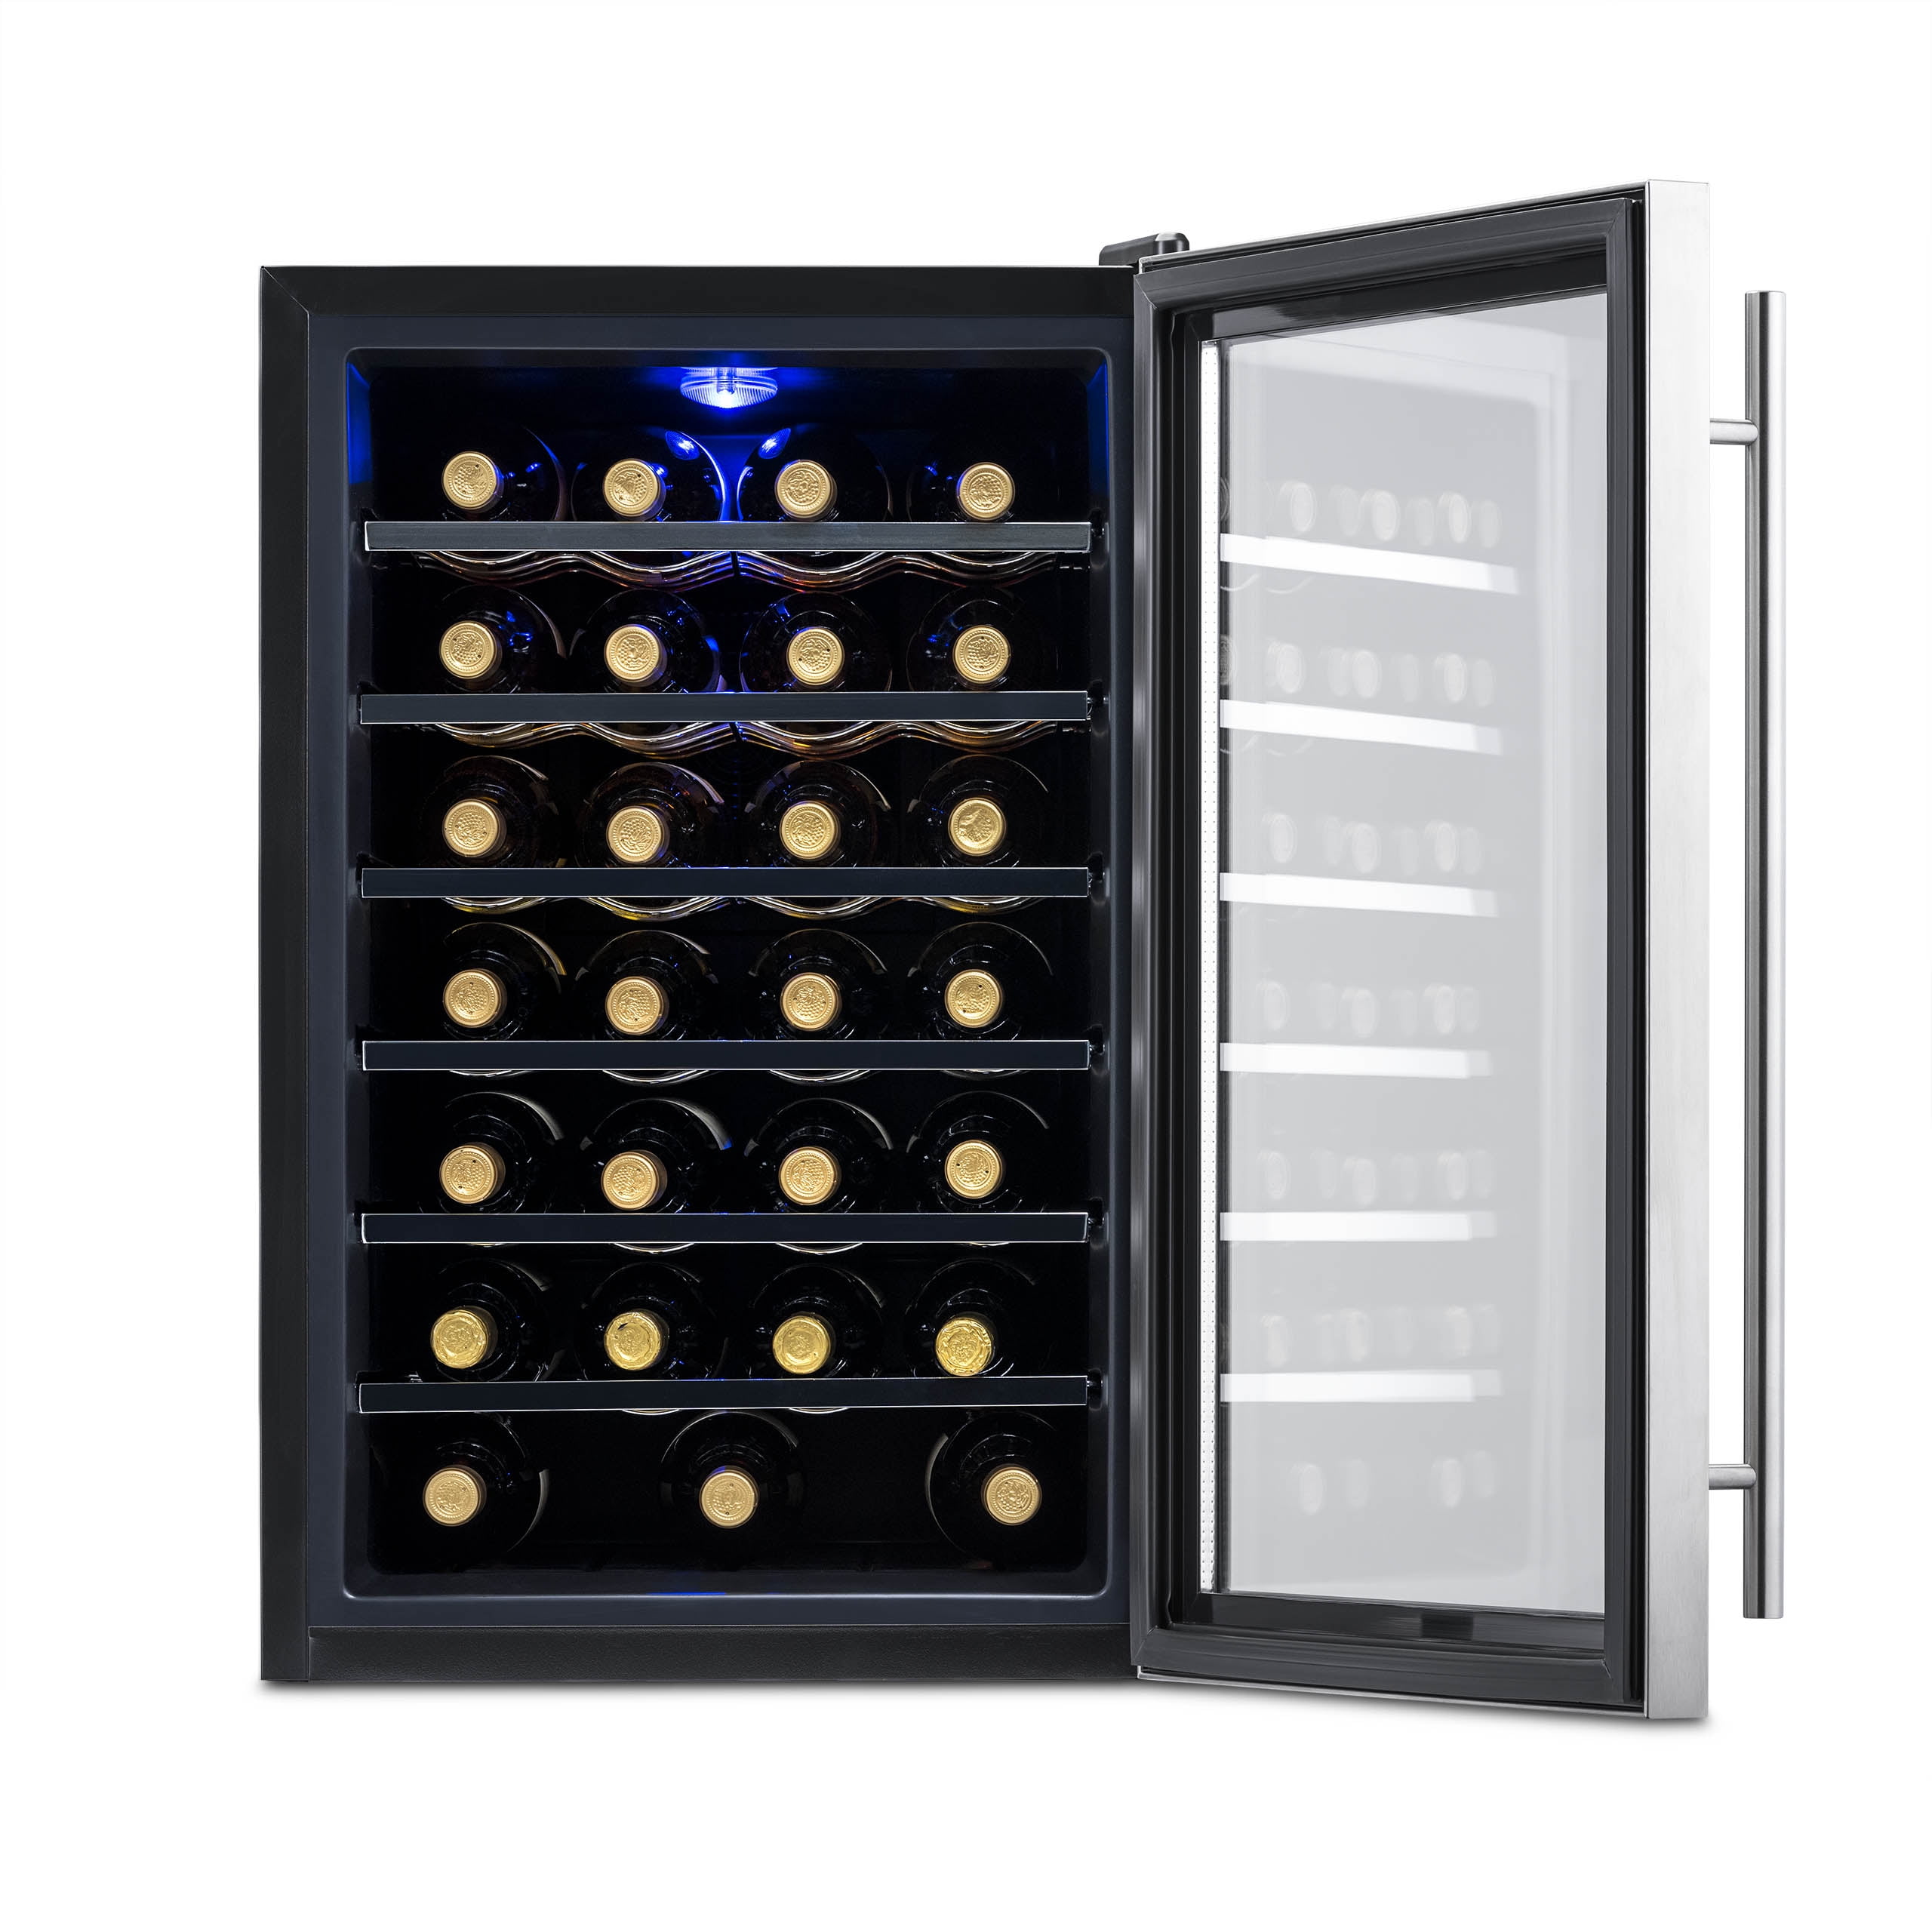 Newair Silent Wine Cooler 28 Bottle Digital Control Freestanding